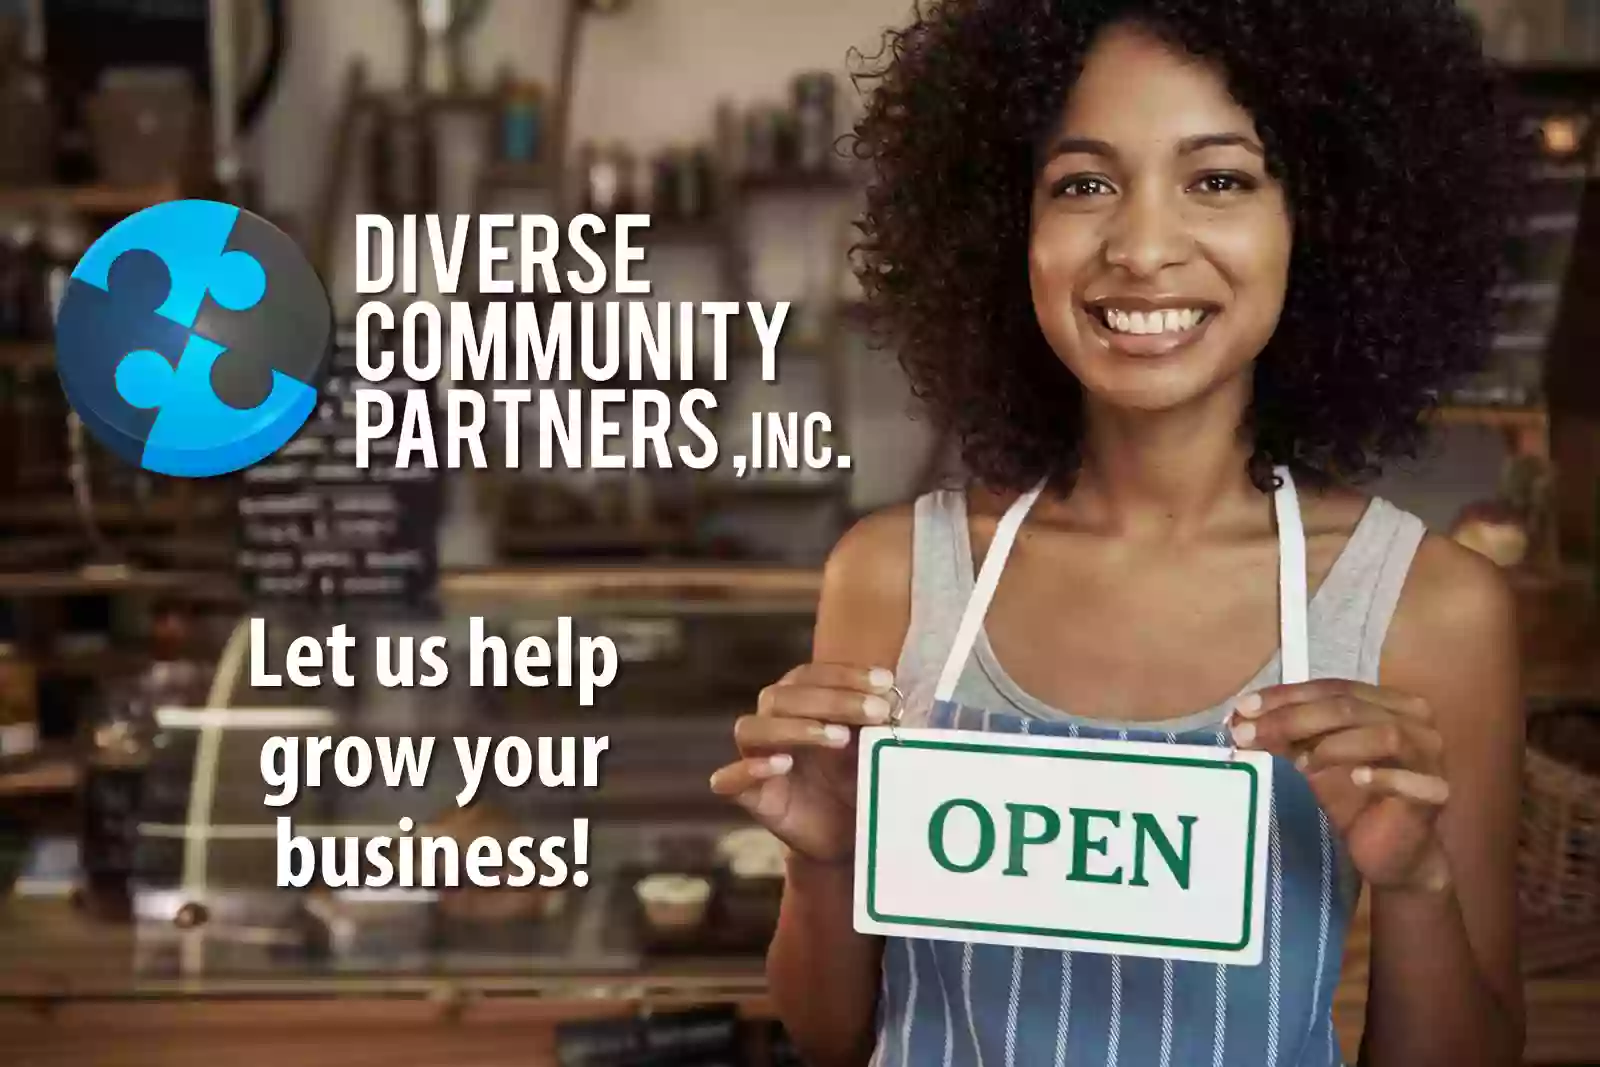 Diverse Community Partners, Inc.